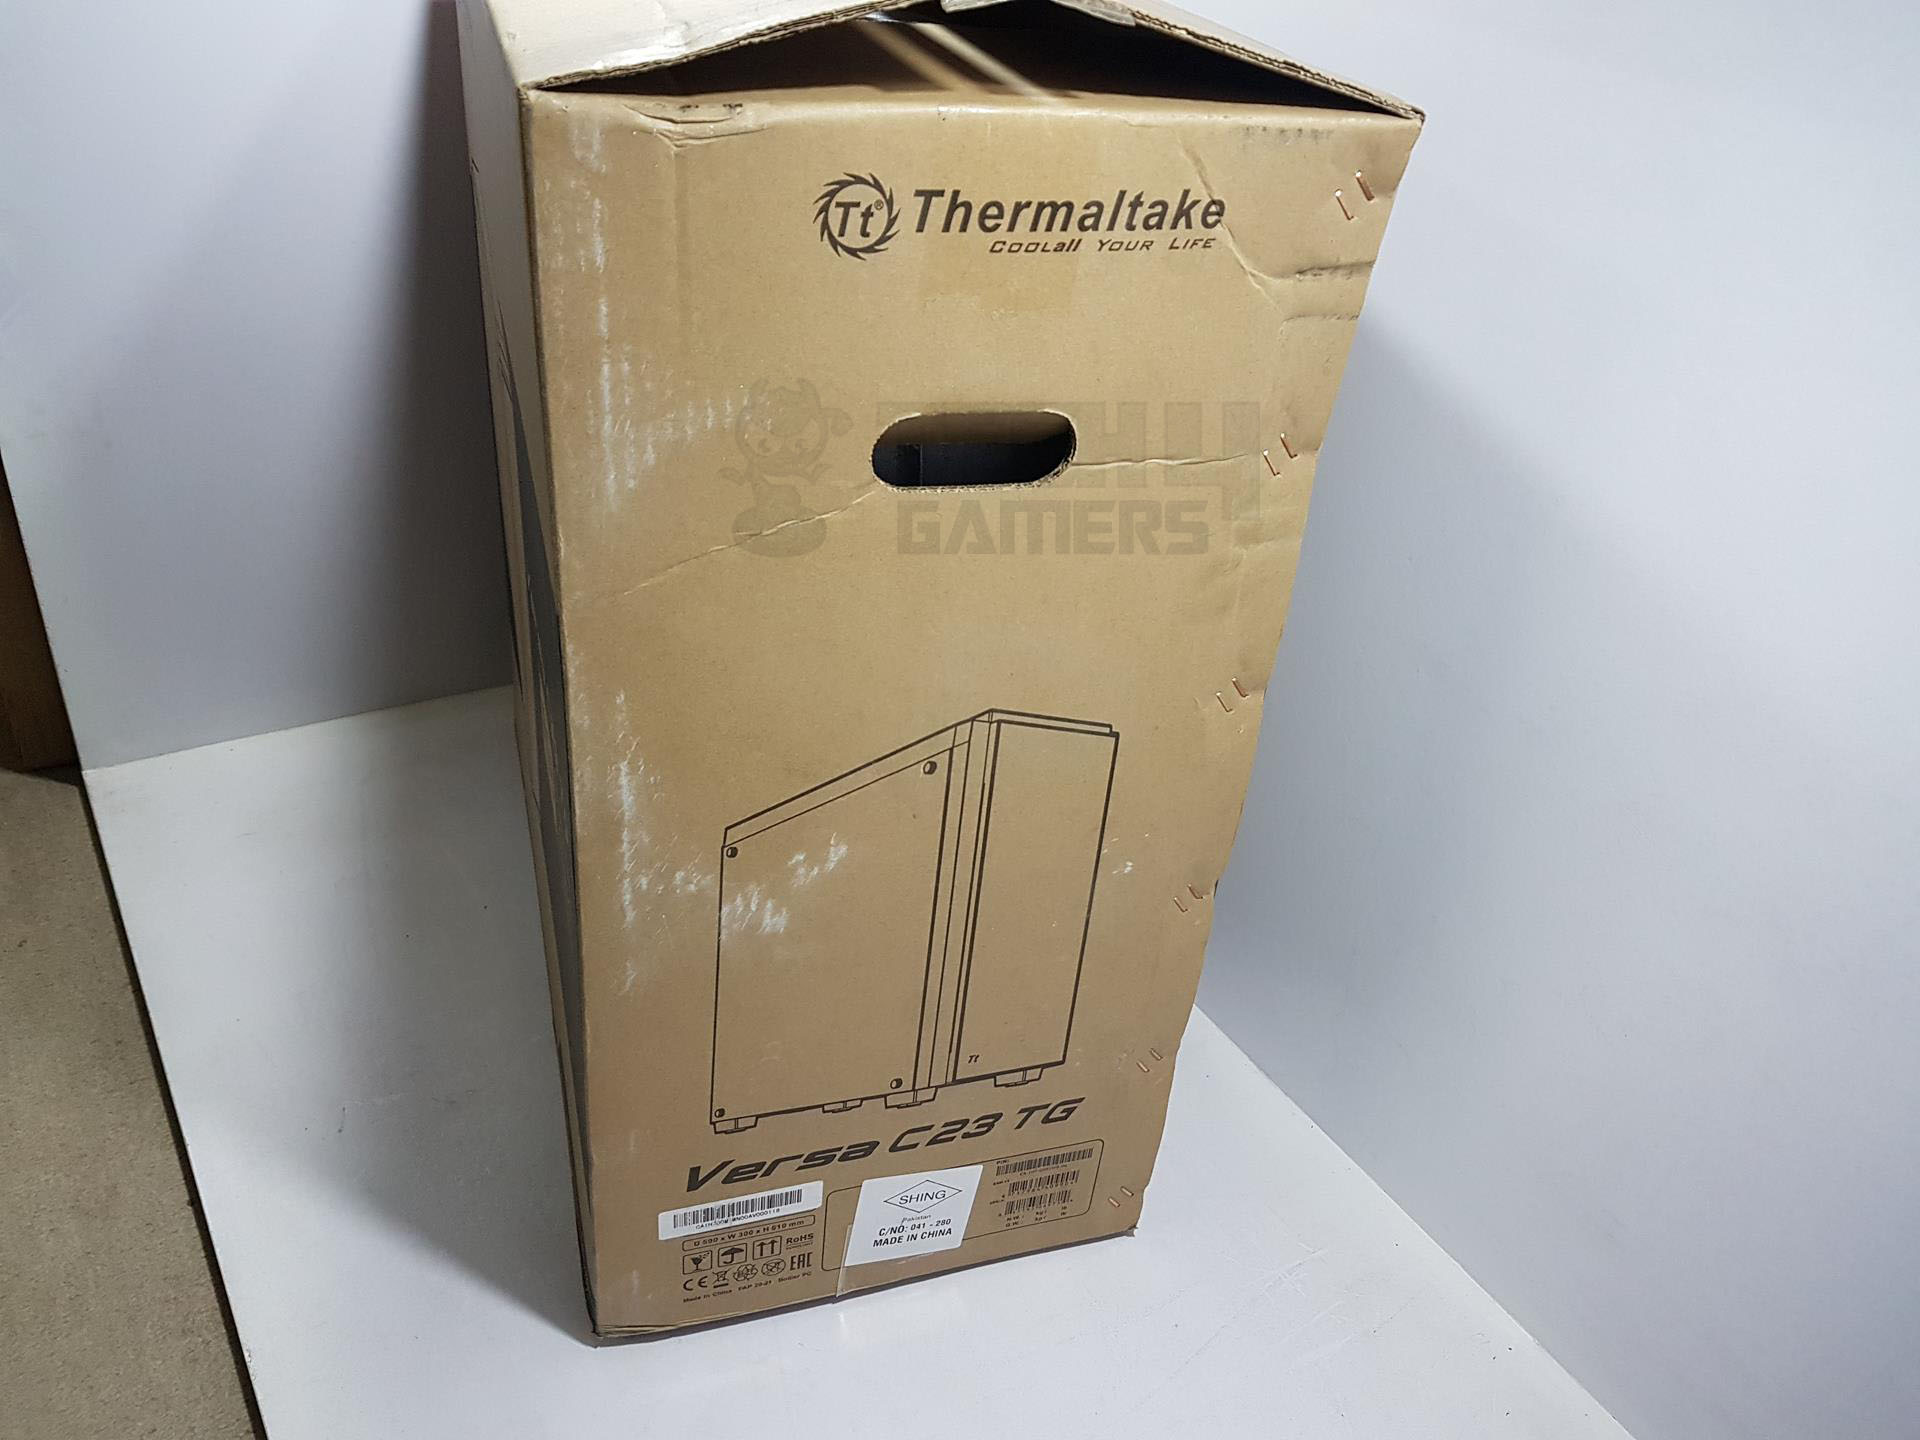 C23 TG Packaging thermaltake logo